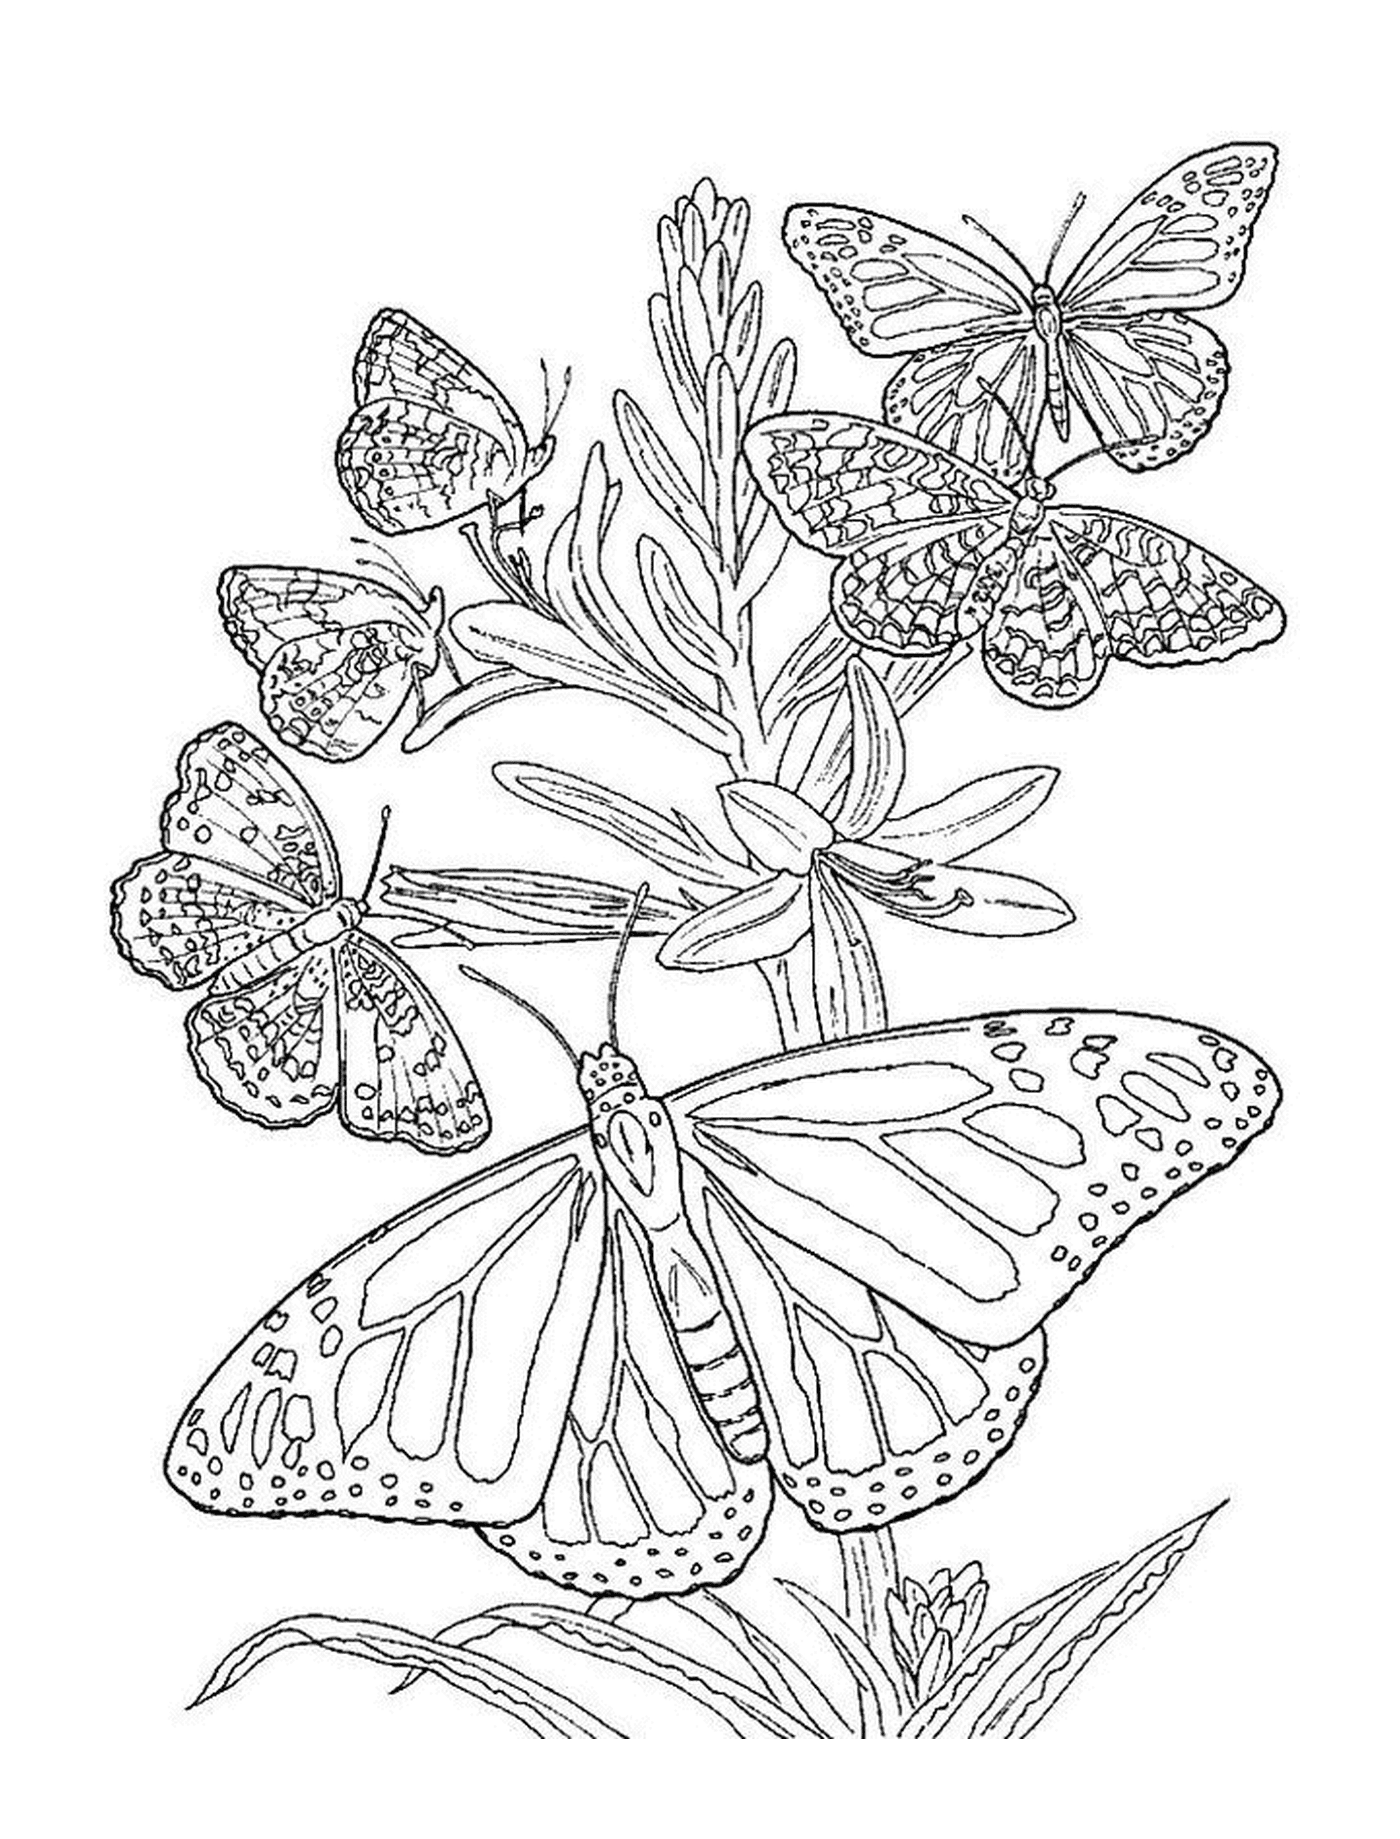  Vielfältige Schmetterlinge gelegt 